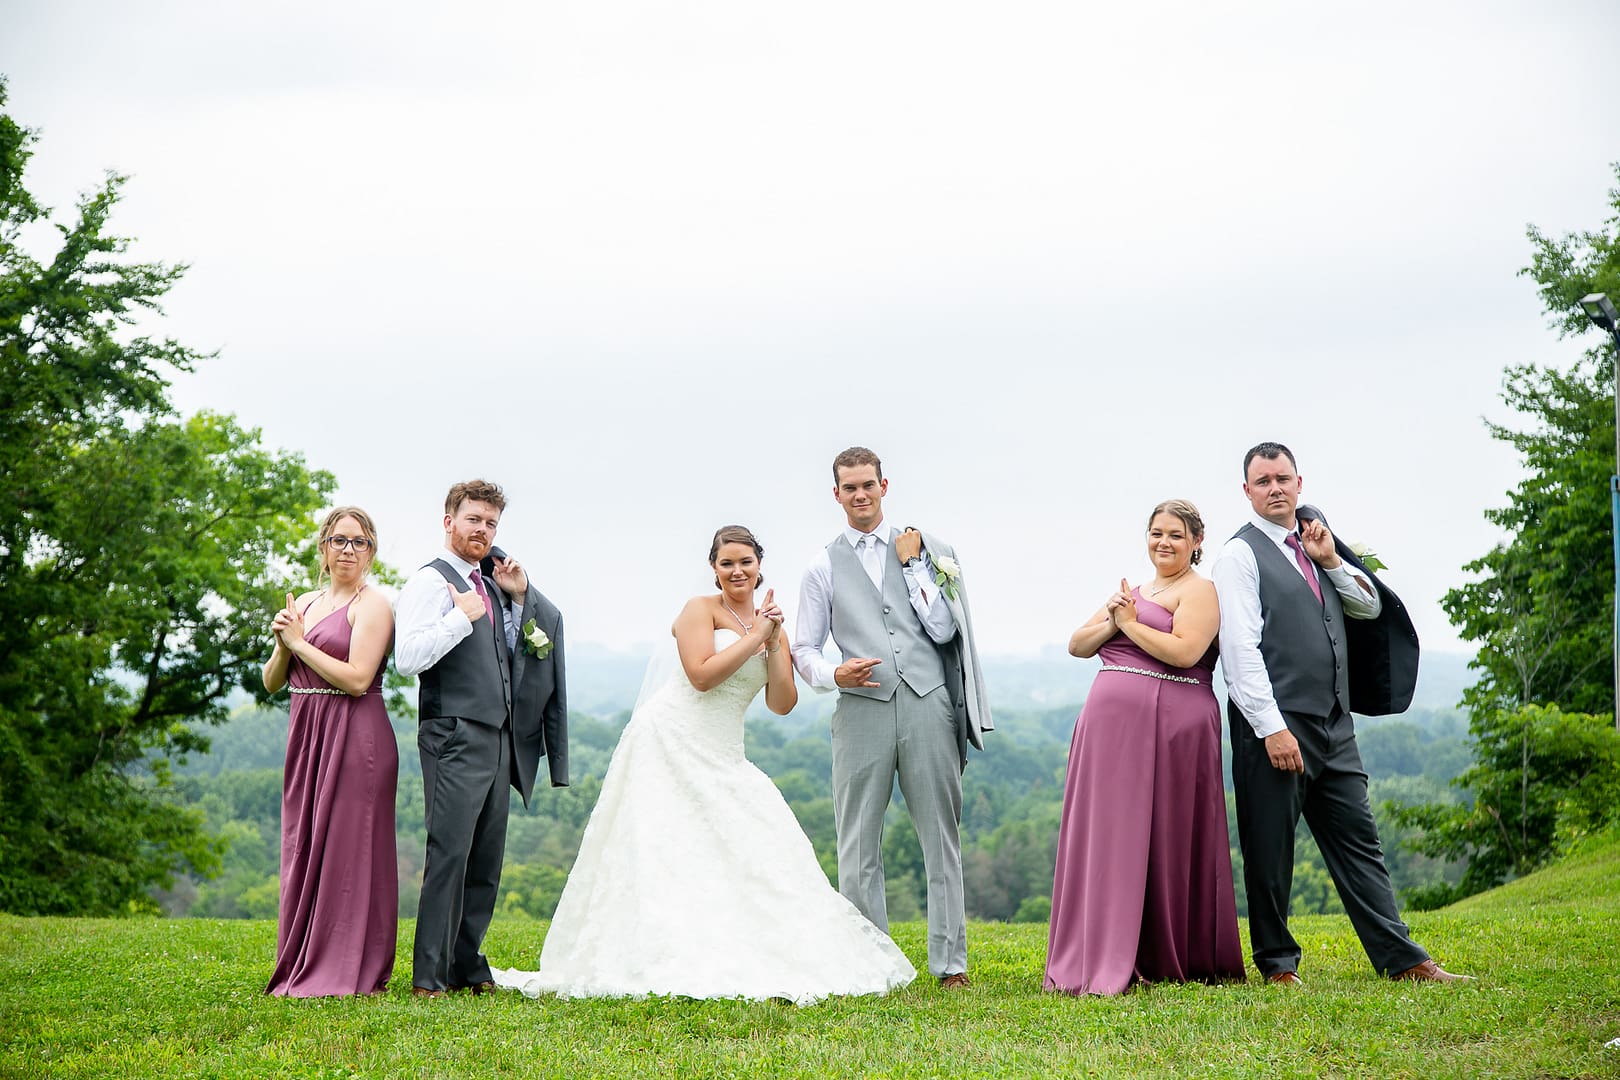 Boler mountain wedding photographer